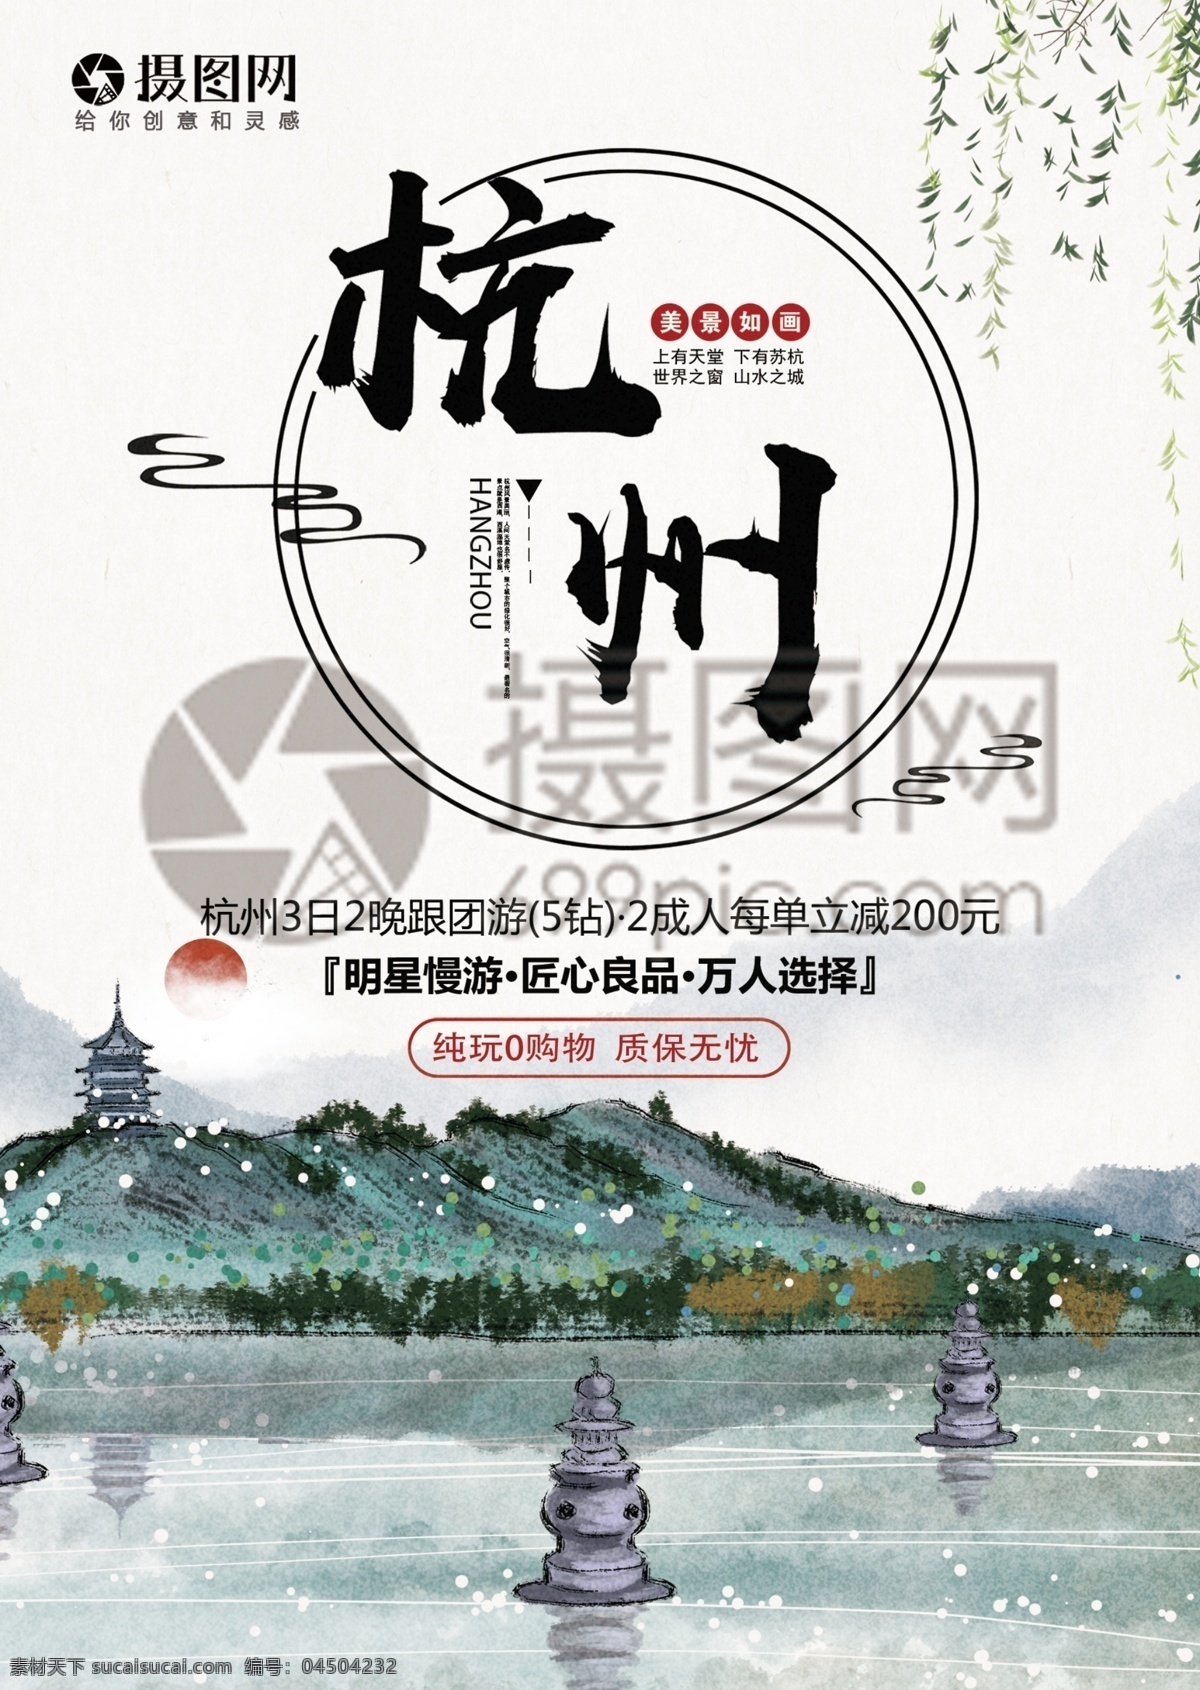 杭州旅游 宣传单 杭州 西湖 灵隐寺 人间天堂 旅游 度假 旅游宣传 宣传单设计 假期 游玩